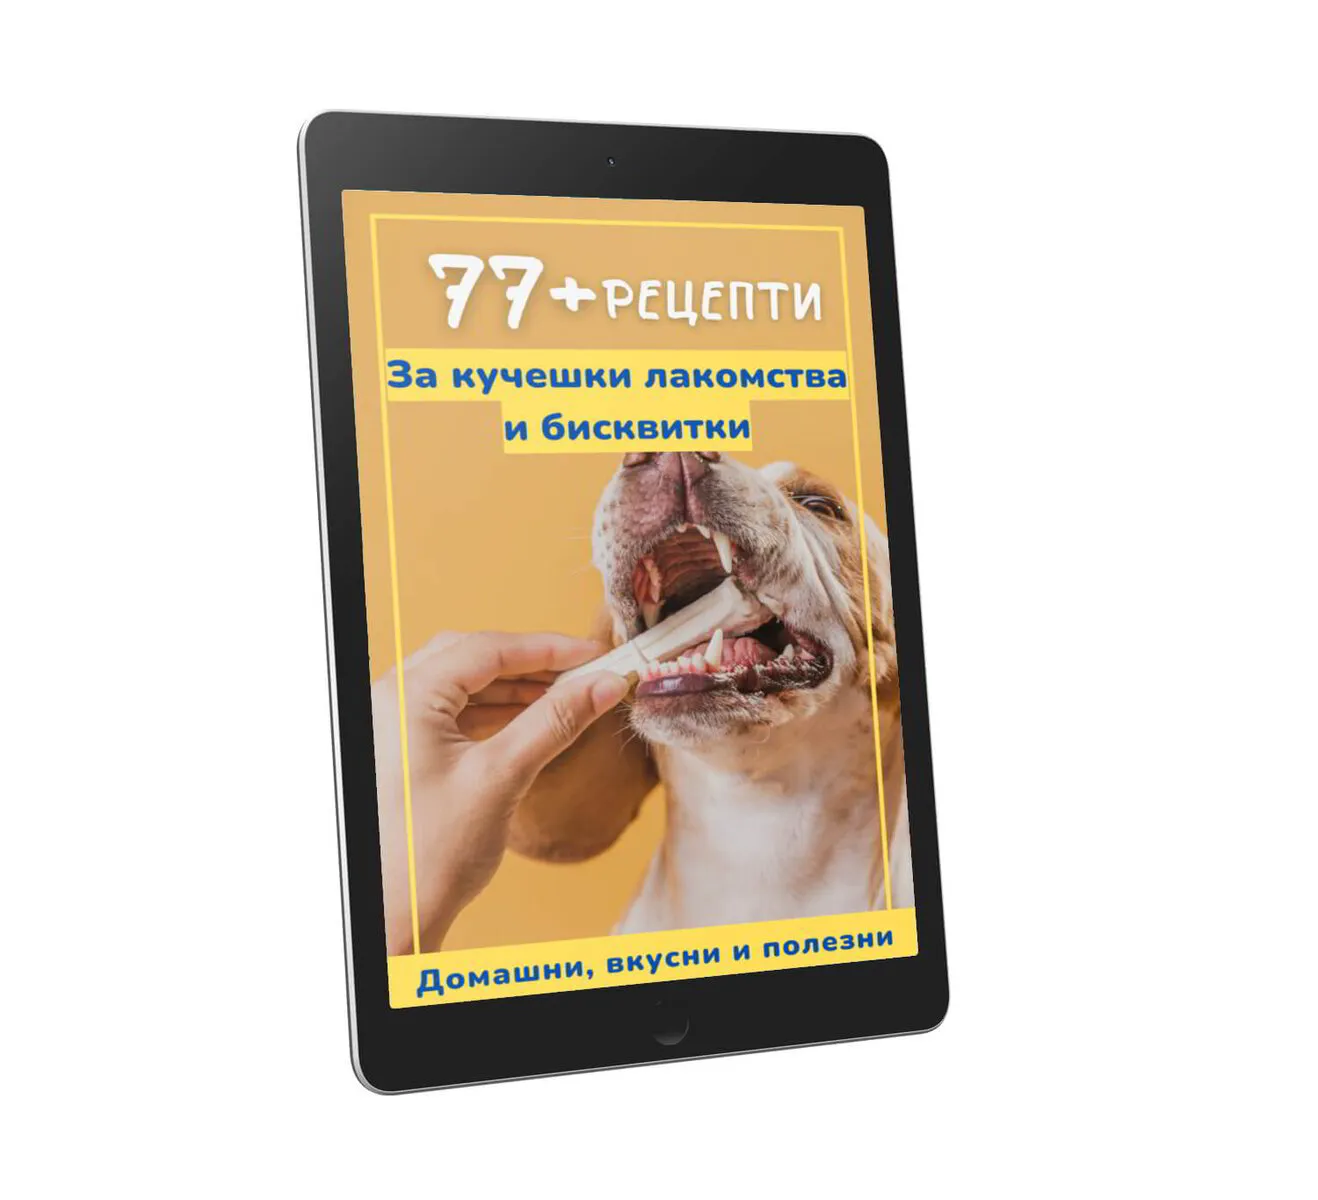 Електронна книга - "77+ рецепти за домашни КУЧЕШКИ ЛАКОМСТВА И БИСКВИТКИ"